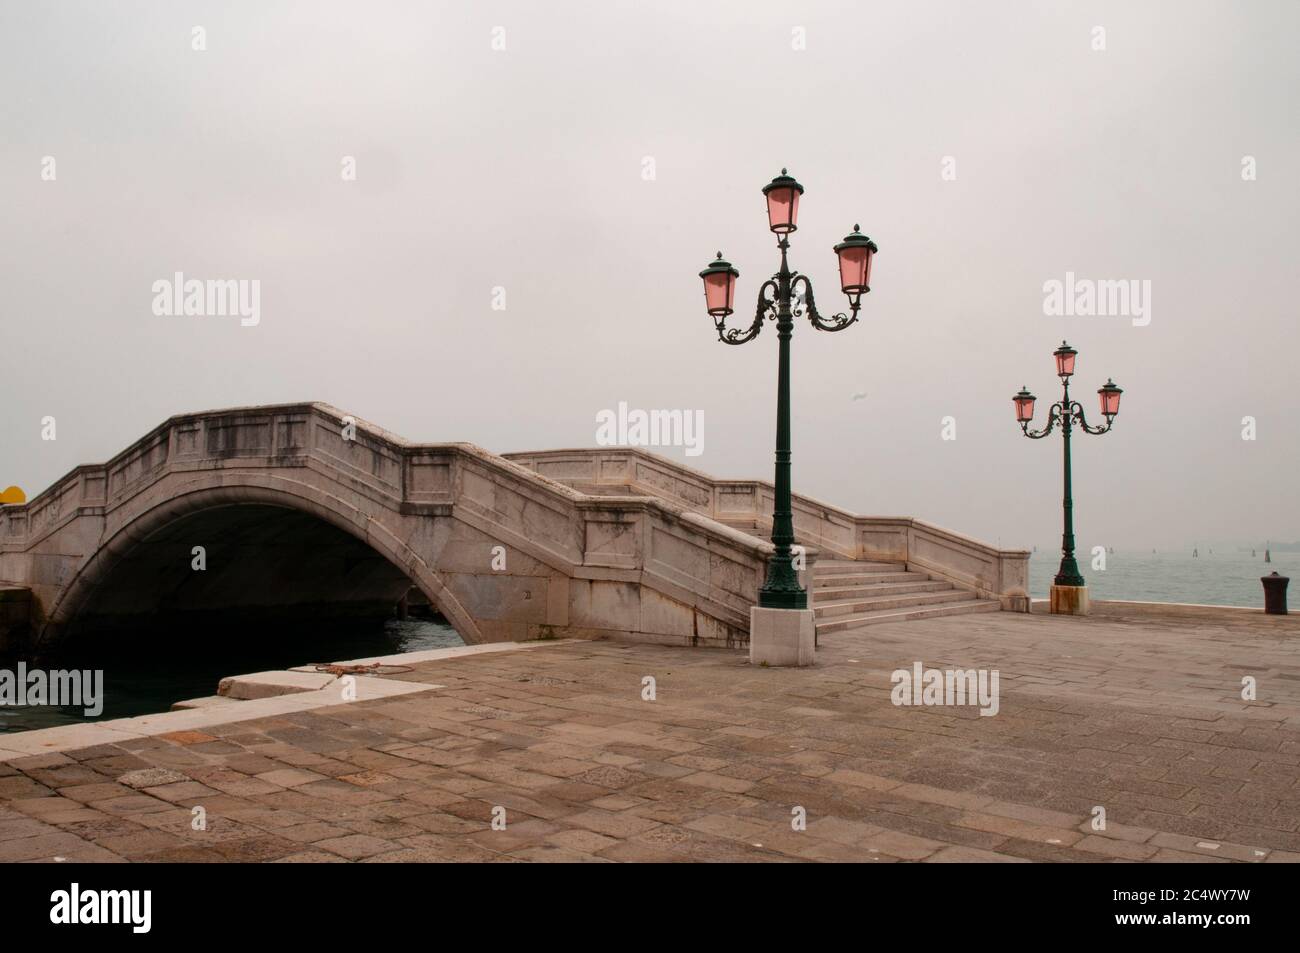 Il ponte istriano in pietra di Venezia di fronte al bacino di San Marco nella laguna veneta, molto lontano dai rumori e dall'inquinamento della città Foto Stock